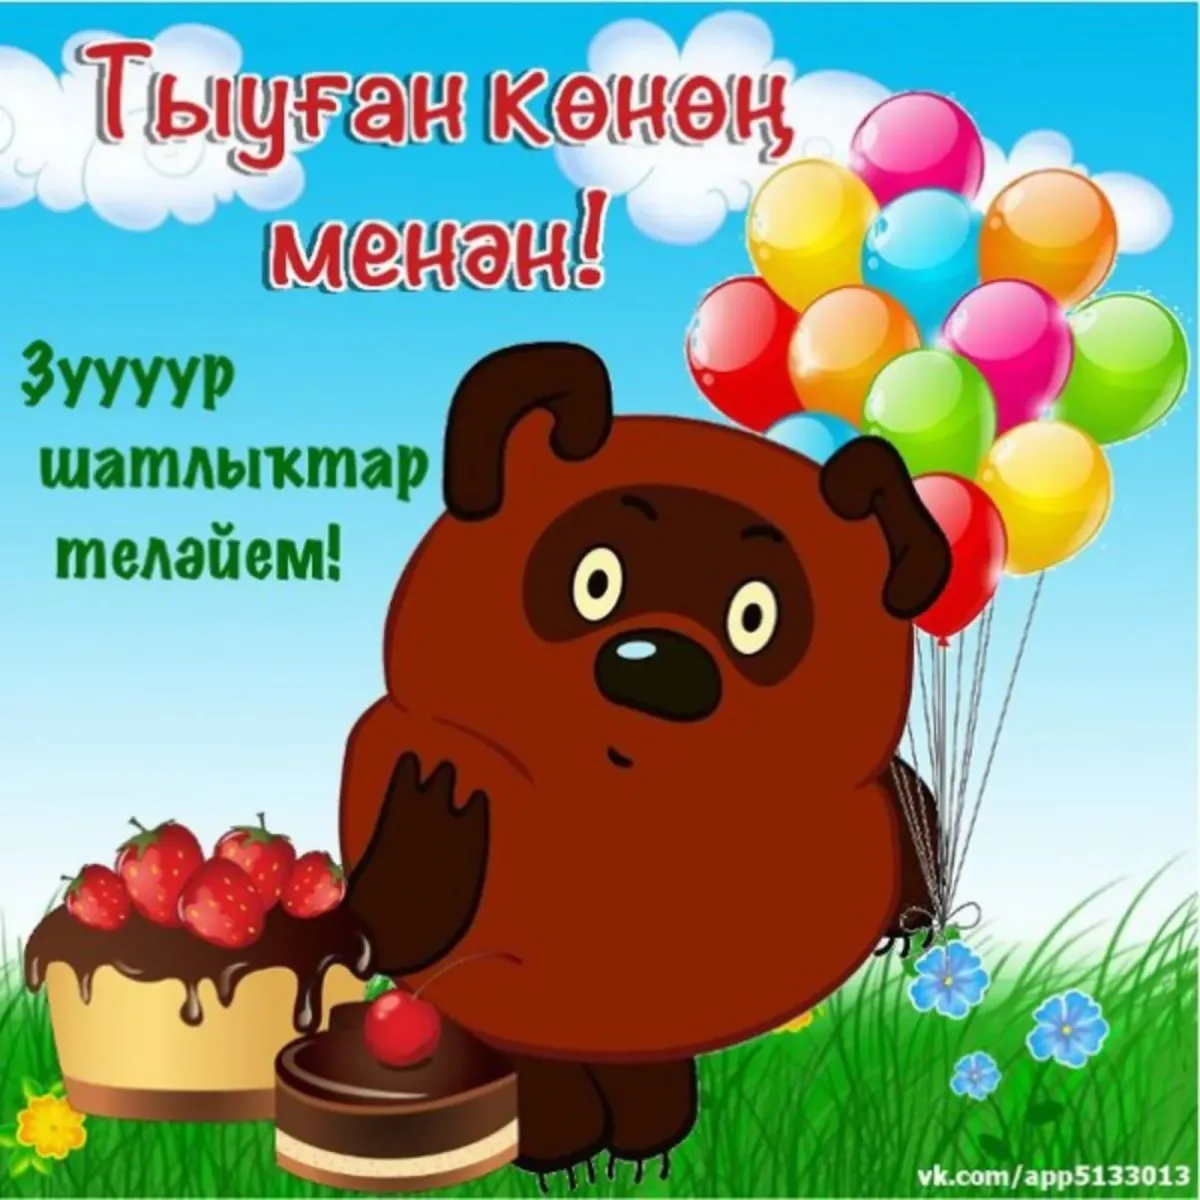 Поздравления с днём рождения на башкирском языке. Поздравления с днём рождения мужчине на башкирском языке. Поздравление с юбилеем на башкирском языке.